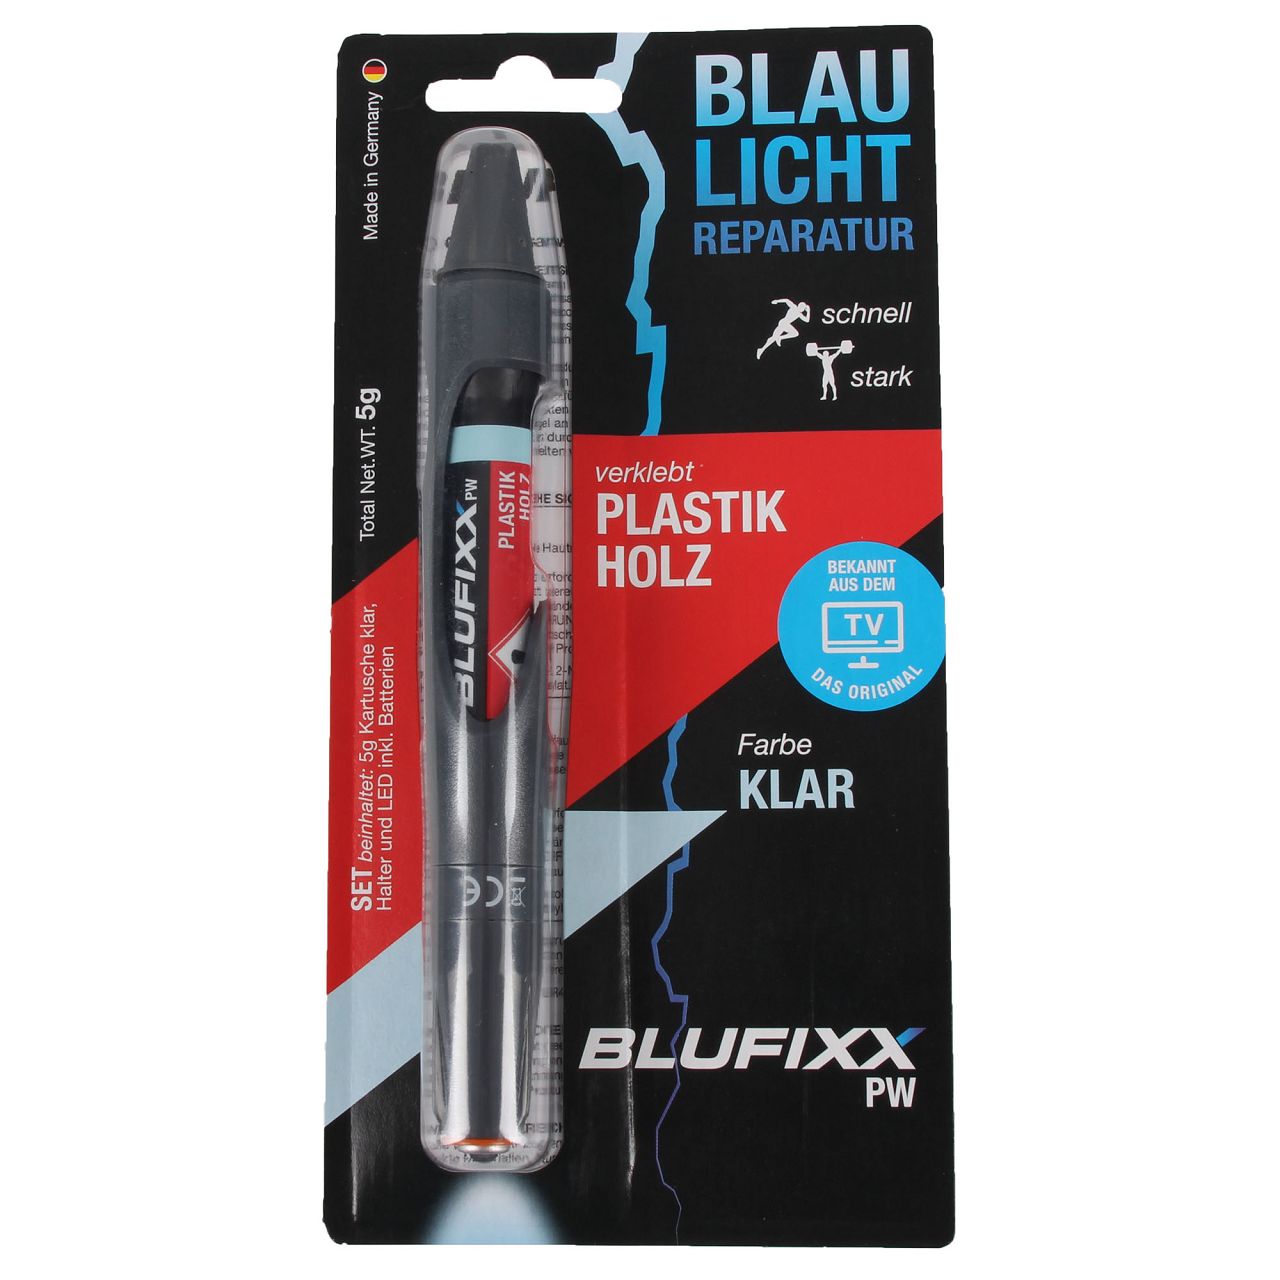 BLUFIXX Reparaturstift Spezialklebstoff 1x Kunststoff Holz + Metall Glas Stein